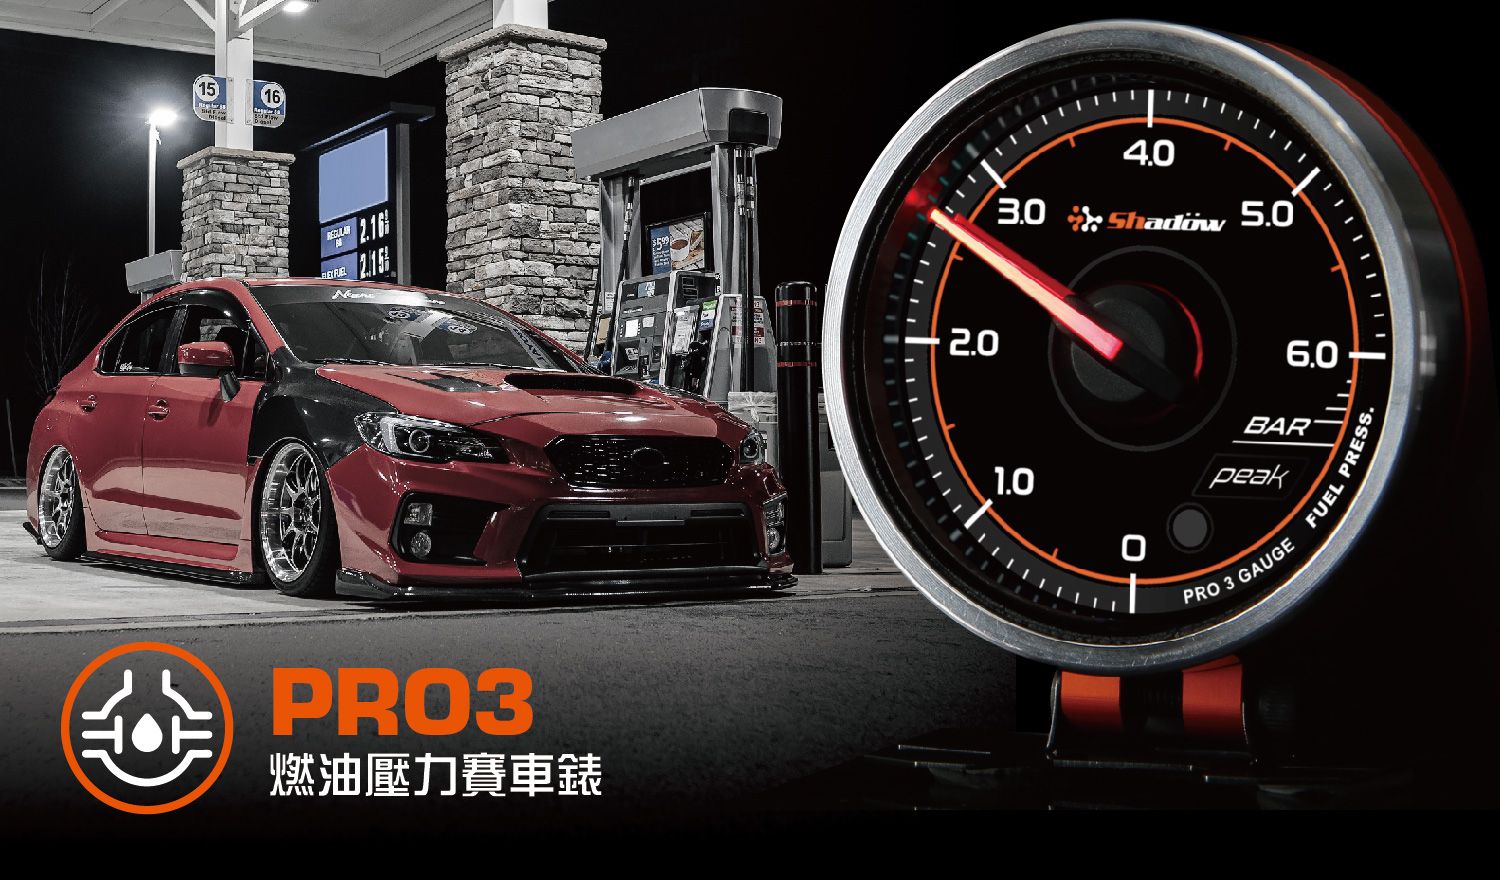 燃油壓力賽車錶測量範圍為0 Bar至6 Bar.